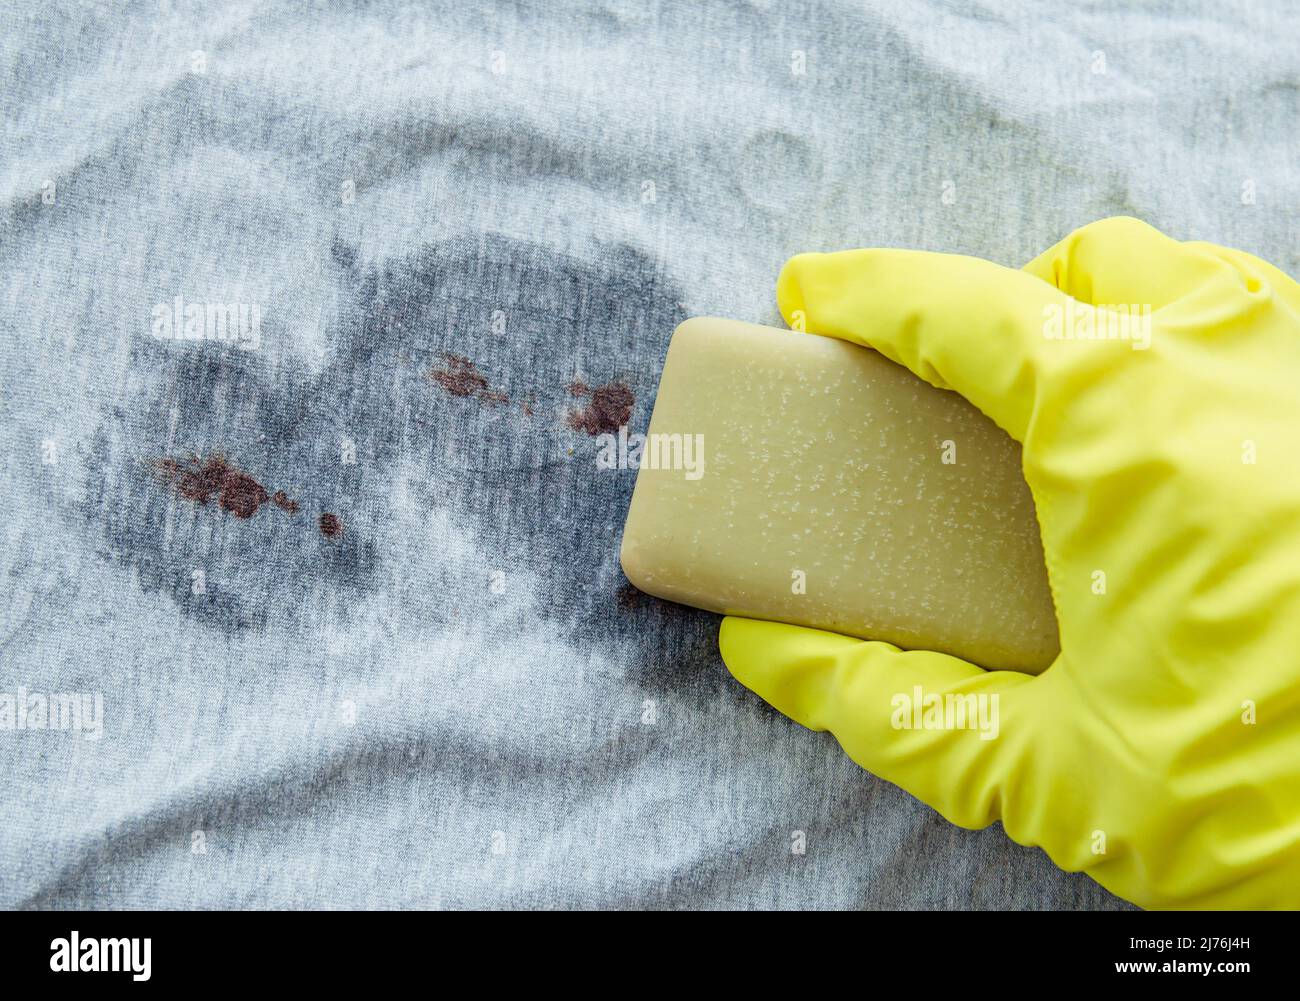 Eliminar las manchas de sangre con una barra de jabón de bilis ( gall, sap). Concepto de productos naturales de lavado de ropa para el hogar sin productos químicos. Jabón de mano. Foto de stock